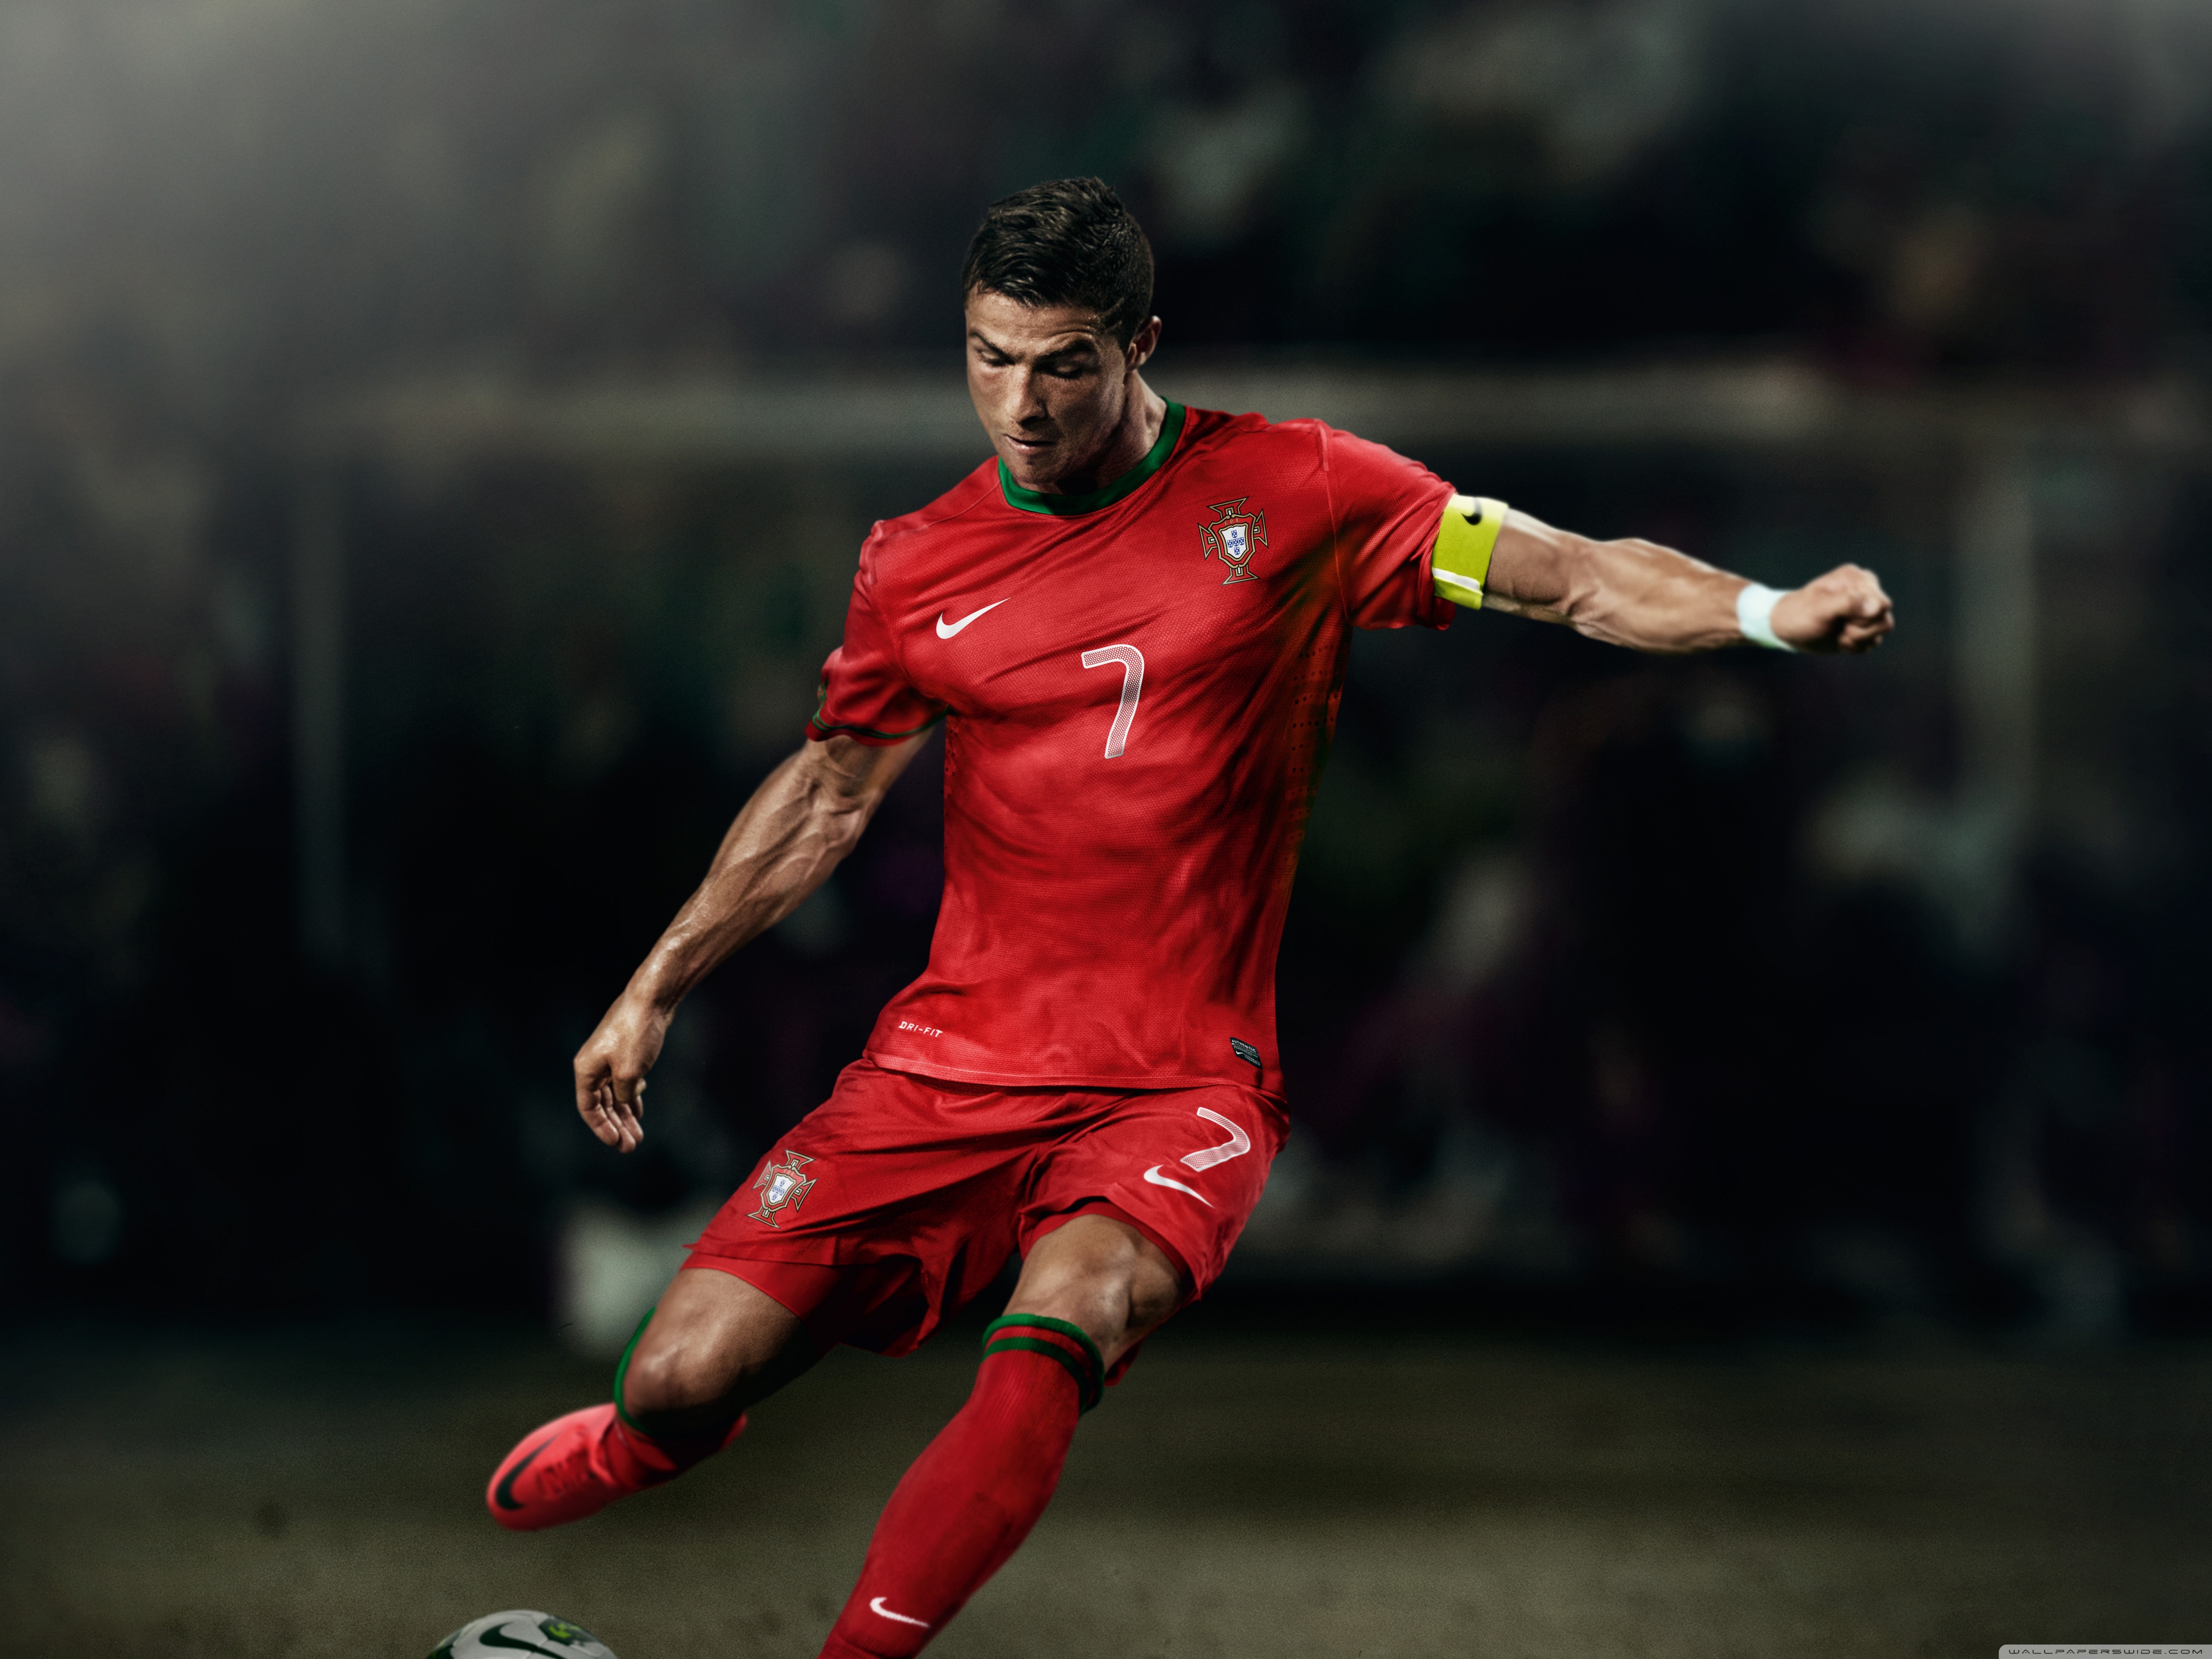 Cristiano Ronaldo In Portugal Jersey - HD Wallpaper 